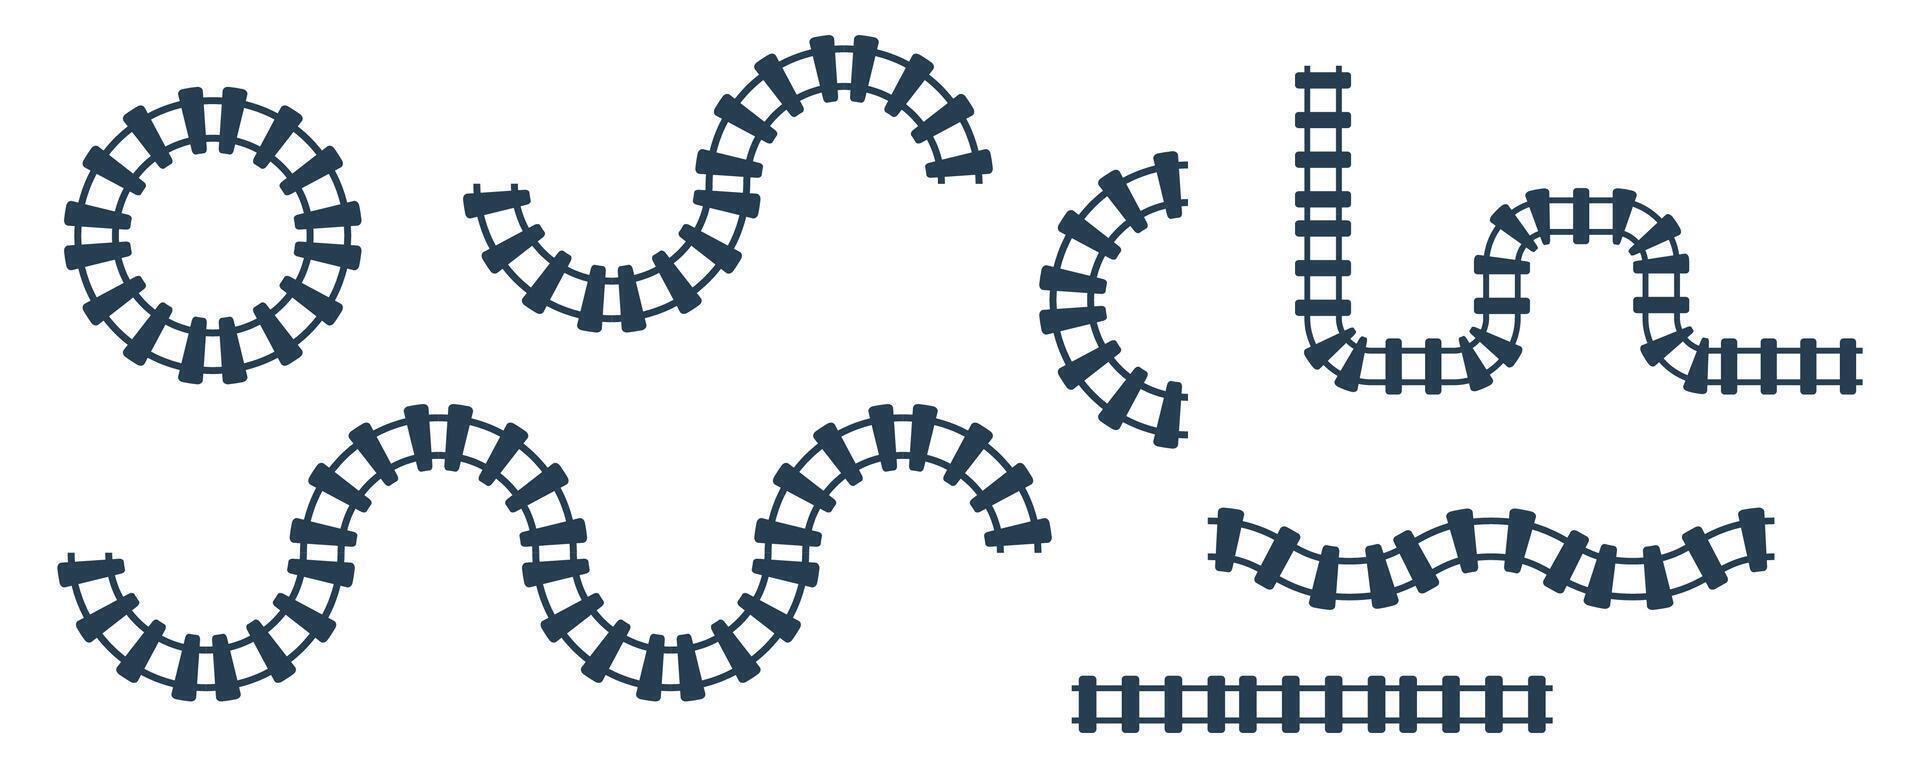 järnväg tåg Spår vektor illustration isolerat på vit bakgrund. järnväg mönster runda cirkulär kurva järnväg väg ikon